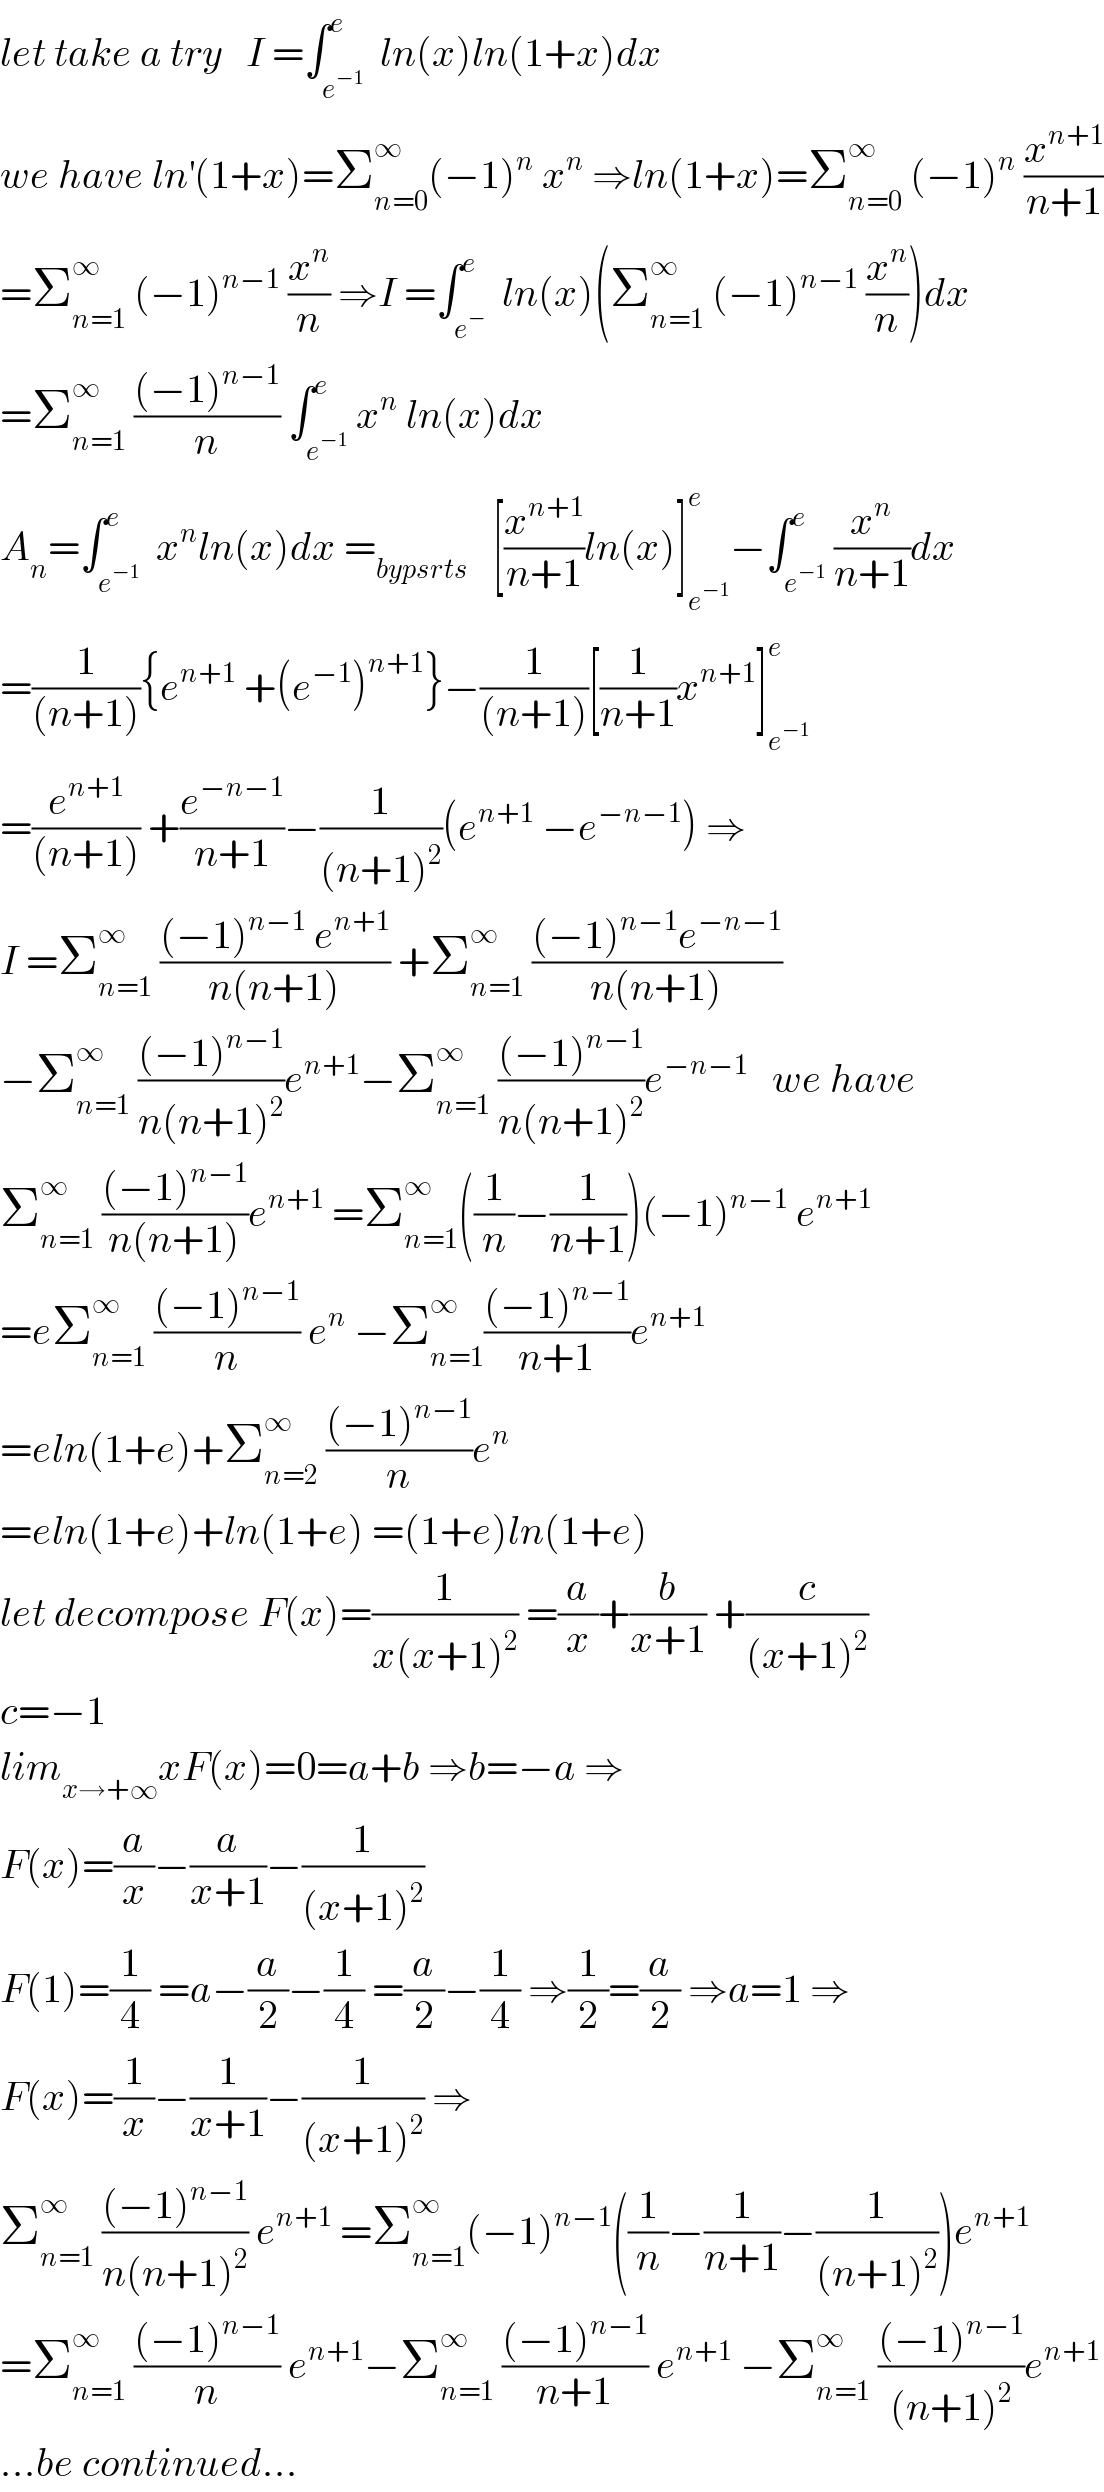 let take a try   I =∫_e^(−1)  ^e  ln(x)ln(1+x)dx  we have ln^′ (1+x)=Σ_(n=0) ^∞ (−1)^n  x^n  ⇒ln(1+x)=Σ_(n=0) ^∞  (−1)^n  (x^(n+1) /(n+1))  =Σ_(n=1) ^∞  (−1)^(n−1)  (x^n /n) ⇒I =∫_e^−  ^e  ln(x)(Σ_(n=1) ^∞  (−1)^(n−1)  (x^n /n))dx  =Σ_(n=1) ^∞  (((−1)^(n−1) )/n) ∫_e^(−1)  ^e x^n  ln(x)dx  A_n =∫_e^(−1)  ^e  x^n ln(x)dx =_(bypsrts)    [(x^(n+1) /(n+1))ln(x)]_e^(−1)  ^e −∫_e^(−1)  ^e (x^n /(n+1))dx  =(1/((n+1))){e^(n+1)  +(e^(−1) )^(n+1) }−(1/((n+1)))[(1/(n+1))x^(n+1) ]_e^(−1)  ^e   =(e^(n+1) /((n+1))) +(e^(−n−1) /(n+1))−(1/((n+1)^2 ))(e^(n+1)  −e^(−n−1) ) ⇒  I =Σ_(n=1) ^∞  (((−1)^(n−1)  e^(n+1) )/(n(n+1))) +Σ_(n=1) ^∞  (((−1)^(n−1) e^(−n−1) )/(n(n+1)))  −Σ_(n=1) ^∞  (((−1)^(n−1) )/(n(n+1)^2 ))e^(n+1) −Σ_(n=1) ^∞  (((−1)^(n−1) )/(n(n+1)^2 ))e^(−n−1)    we have  Σ_(n=1) ^∞  (((−1)^(n−1) )/(n(n+1)))e^(n+1)  =Σ_(n=1) ^∞ ((1/n)−(1/(n+1)))(−1)^(n−1)  e^(n+1)   =eΣ_(n=1) ^∞  (((−1)^(n−1) )/n) e^n  −Σ_(n=1) ^∞ (((−1)^(n−1) )/(n+1))e^(n+1)   =eln(1+e)+Σ_(n=2) ^∞  (((−1)^(n−1) )/n)e^n   =eln(1+e)+ln(1+e) =(1+e)ln(1+e)  let decompose F(x)=(1/(x(x+1)^2 )) =(a/x)+(b/(x+1)) +(c/((x+1)^2 ))  c=−1  lim_(x→+∞) xF(x)=0=a+b ⇒b=−a ⇒  F(x)=(a/x)−(a/(x+1))−(1/((x+1)^2 ))  F(1)=(1/4) =a−(a/2)−(1/4) =(a/2)−(1/4) ⇒(1/2)=(a/2) ⇒a=1 ⇒  F(x)=(1/x)−(1/(x+1))−(1/((x+1)^2 )) ⇒  Σ_(n=1) ^∞  (((−1)^(n−1) )/(n(n+1)^2 )) e^(n+1)  =Σ_(n=1) ^∞ (−1)^(n−1) ((1/n)−(1/(n+1))−(1/((n+1)^2 )))e^(n+1)   =Σ_(n=1) ^∞  (((−1)^(n−1) )/n) e^(n+1) −Σ_(n=1) ^∞  (((−1)^(n−1) )/(n+1)) e^(n+1)  −Σ_(n=1) ^∞  (((−1)^(n−1) )/((n+1)^2 ))e^(n+1)   ...be continued...  